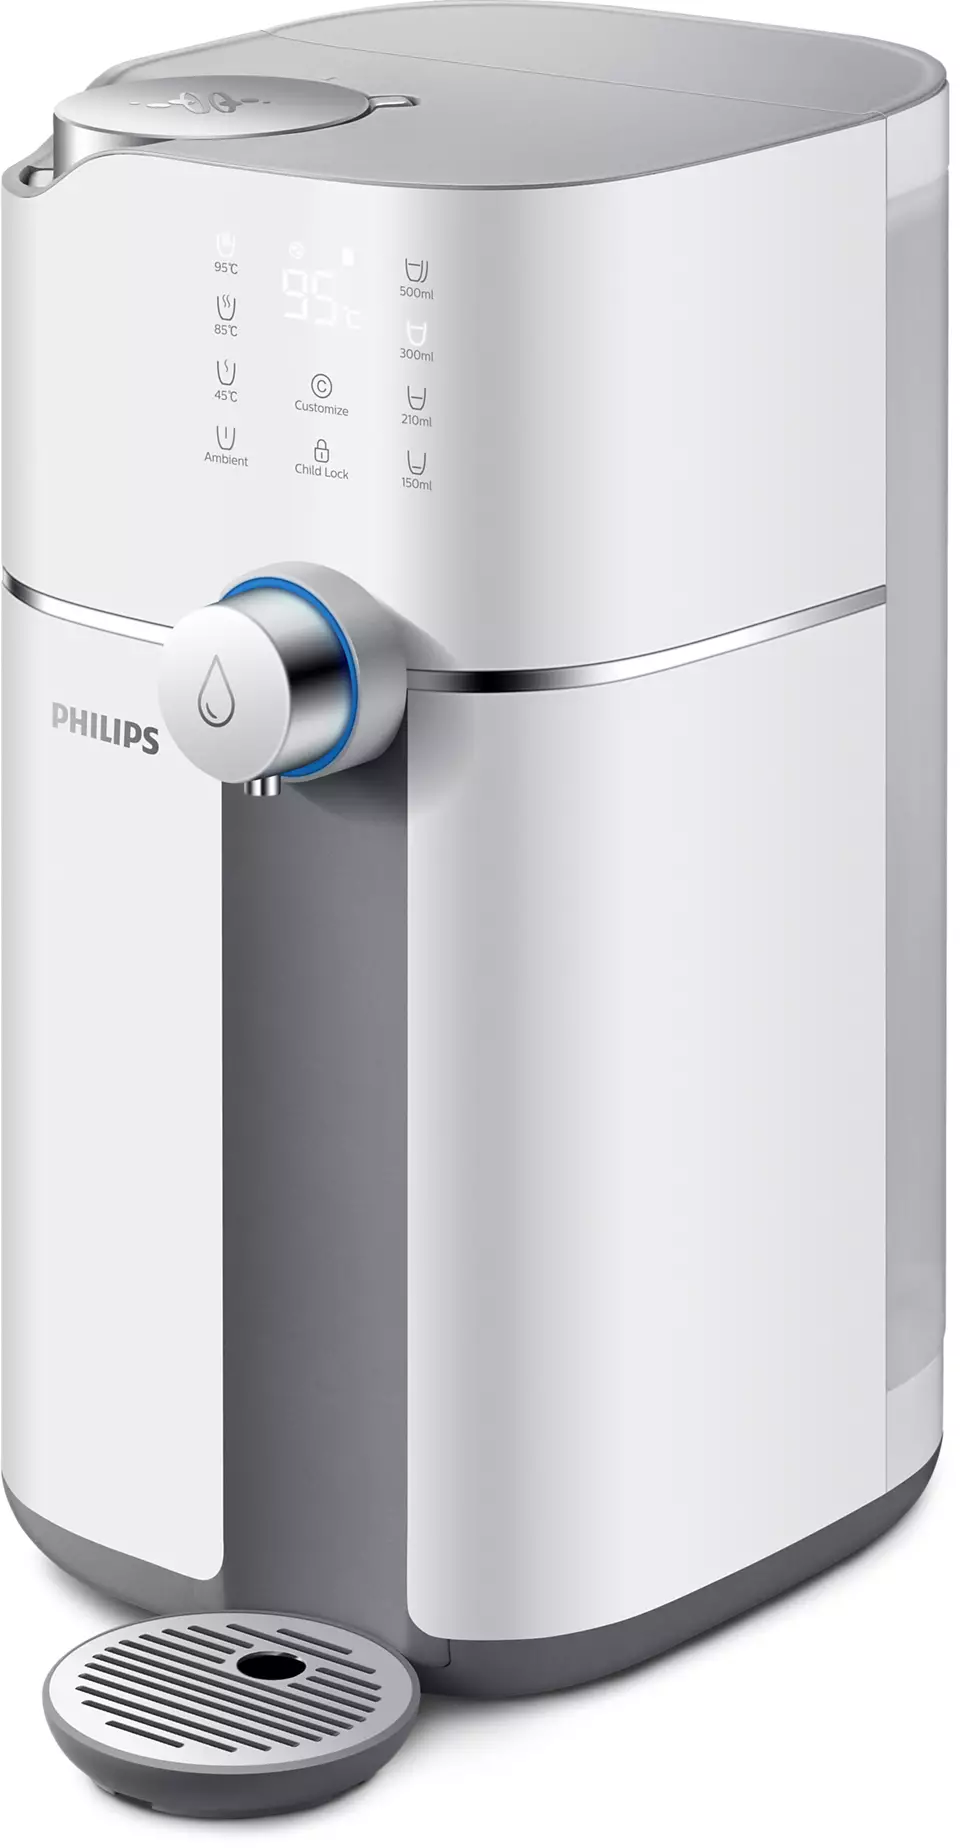 Philips ADD6910 เครื่องกรองน้ําดื่ม RO พร้อมทำน้ำร้อน